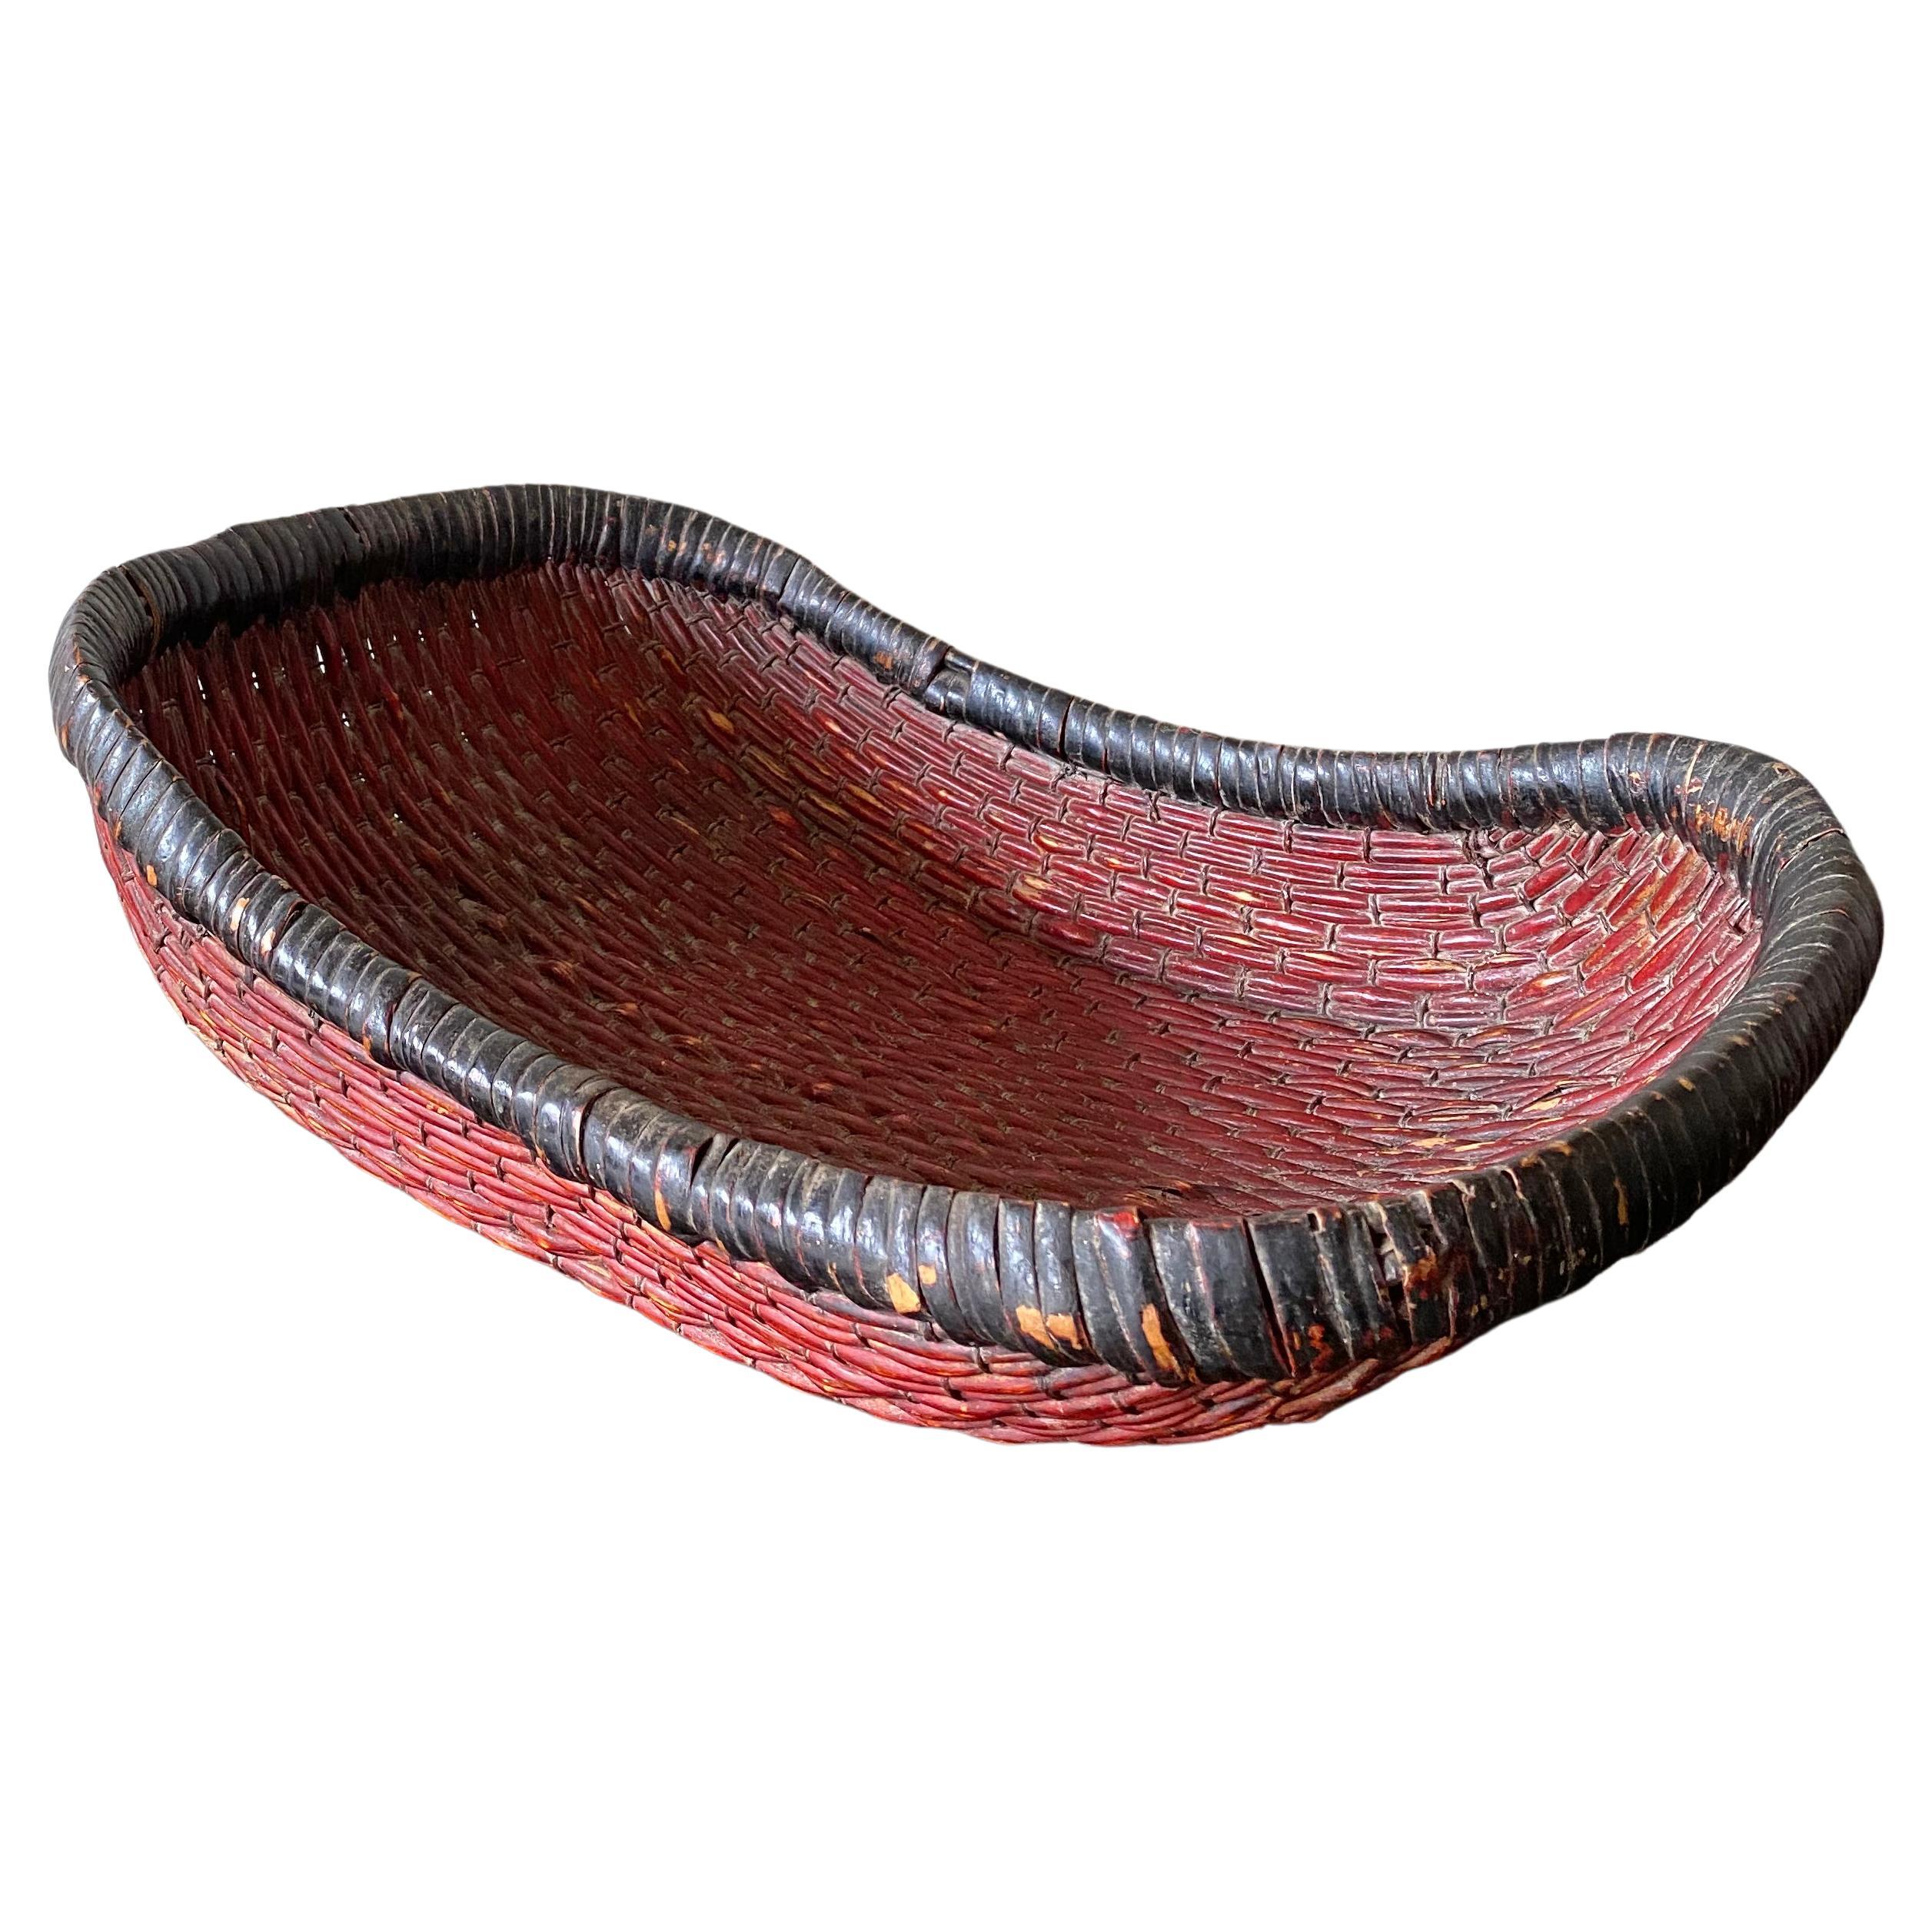 Chinesischer rot bemalter Schilfkorb, „Mantou“-Korb, frühes 20. Jahrhundert